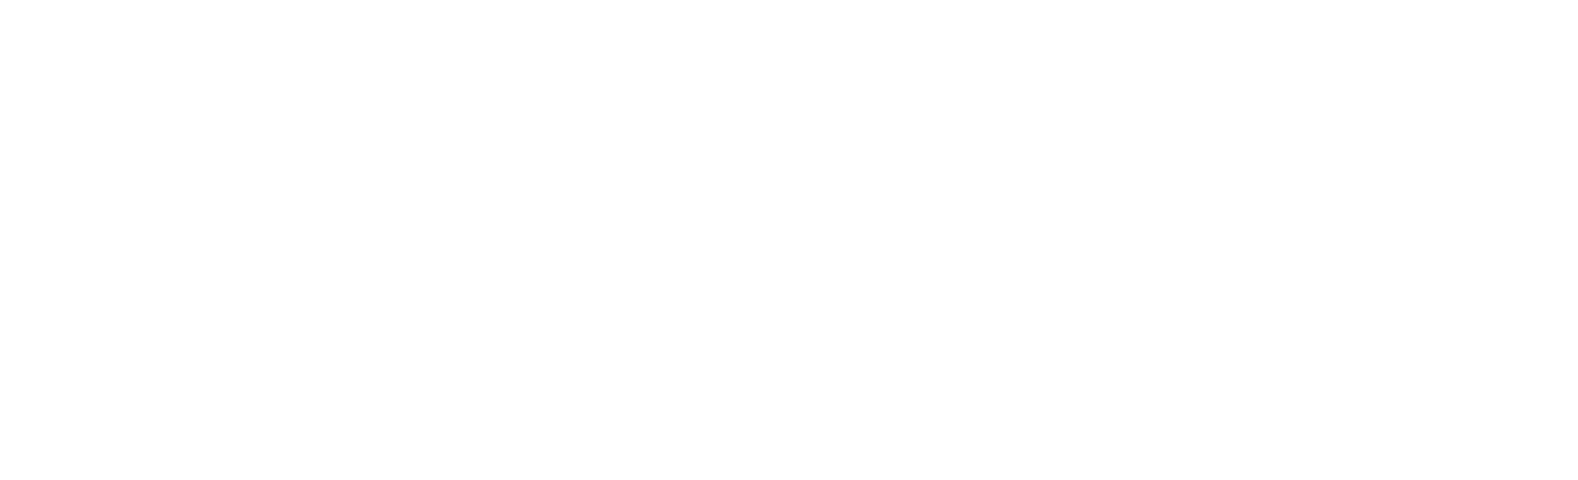 John Wood Group logo large for dark backgrounds (transparent PNG)